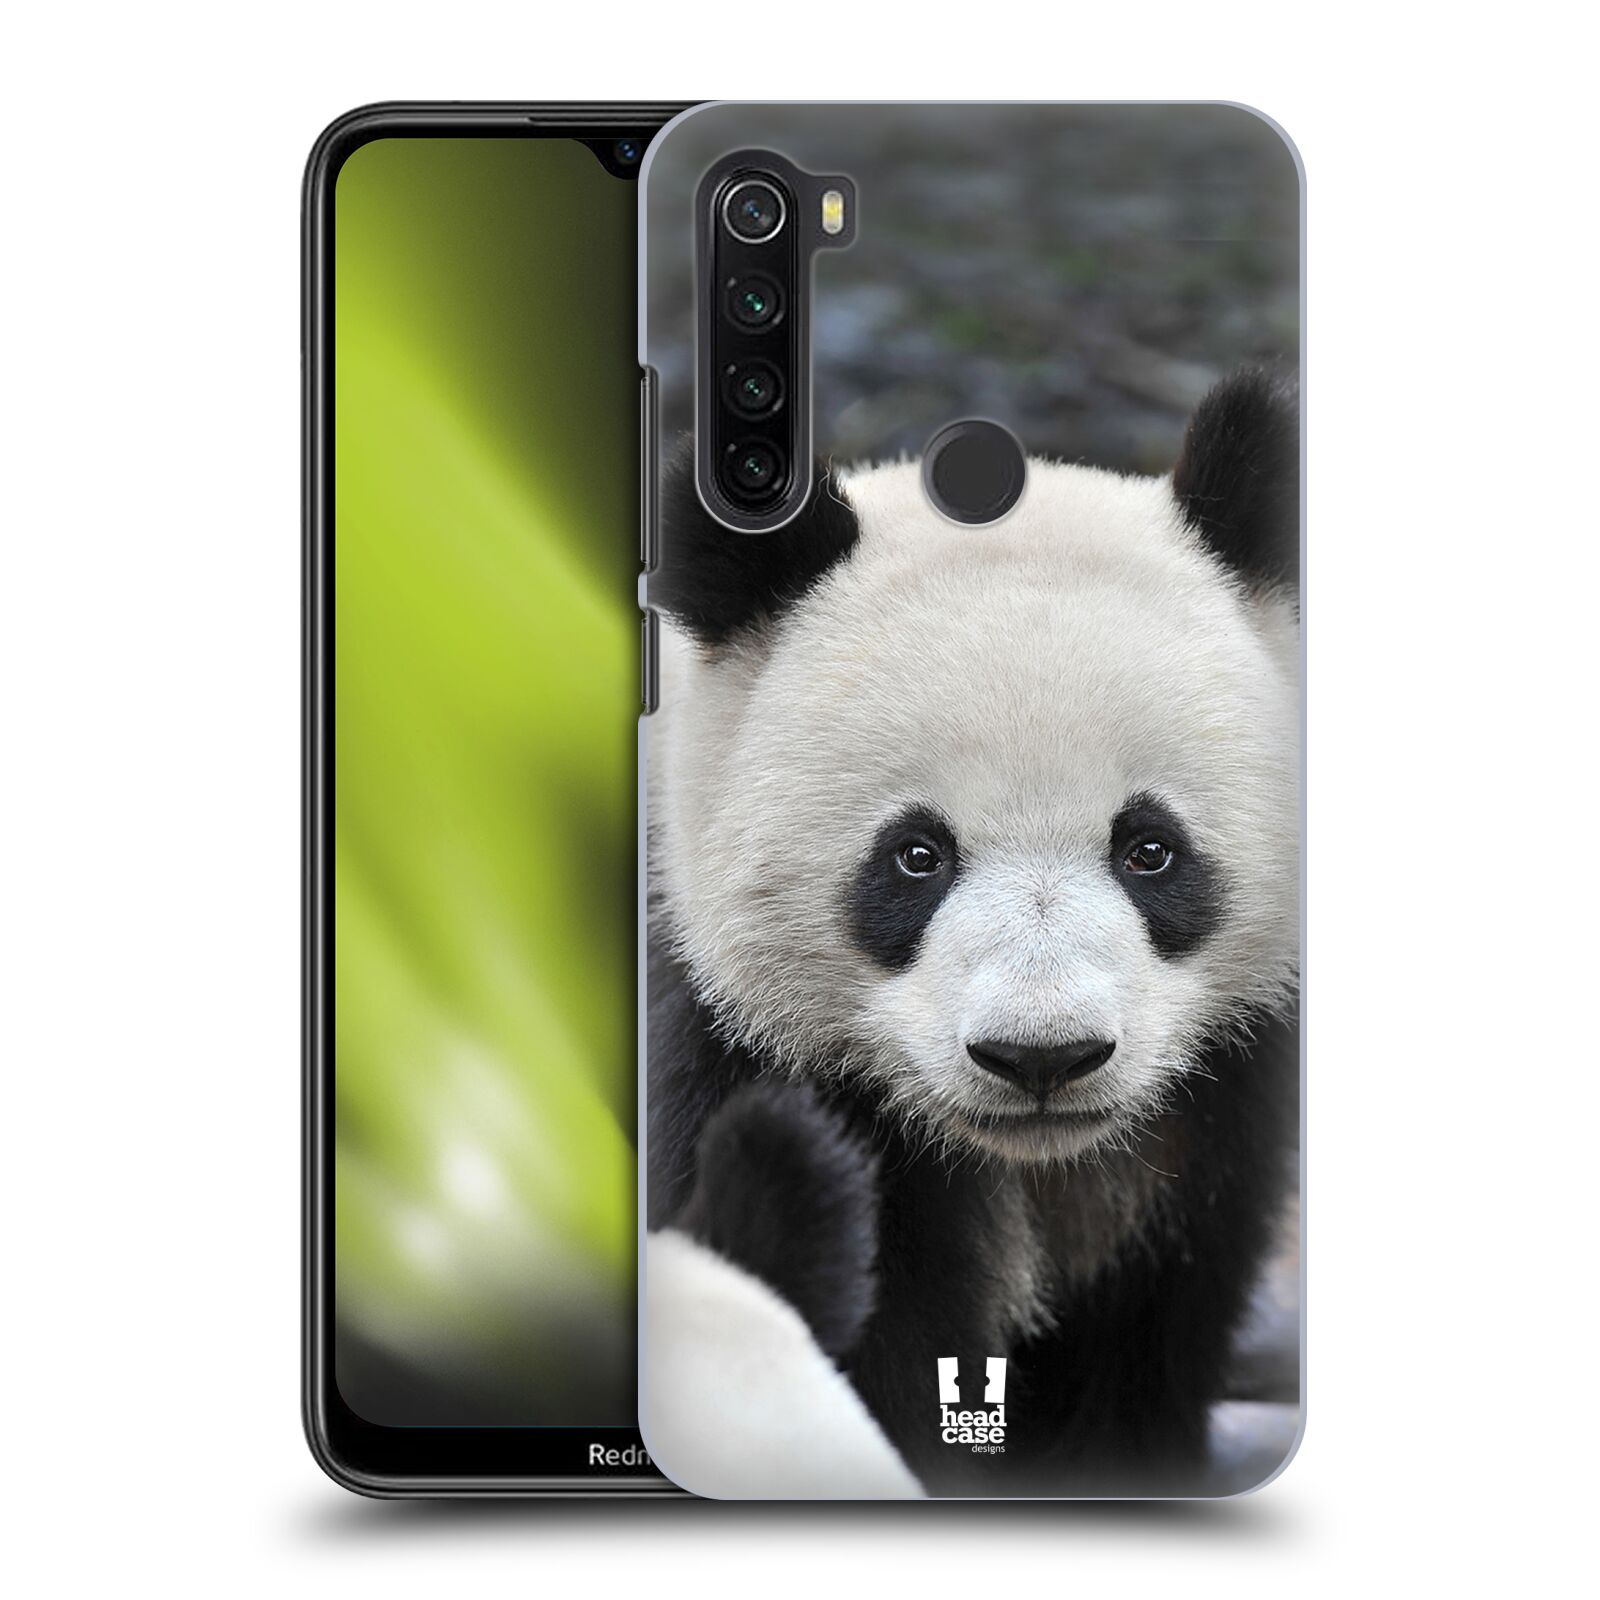 Zadní obal pro mobil Xiaomi Redmi Note 8T - HEAD CASE - Svět zvířat medvěd panda